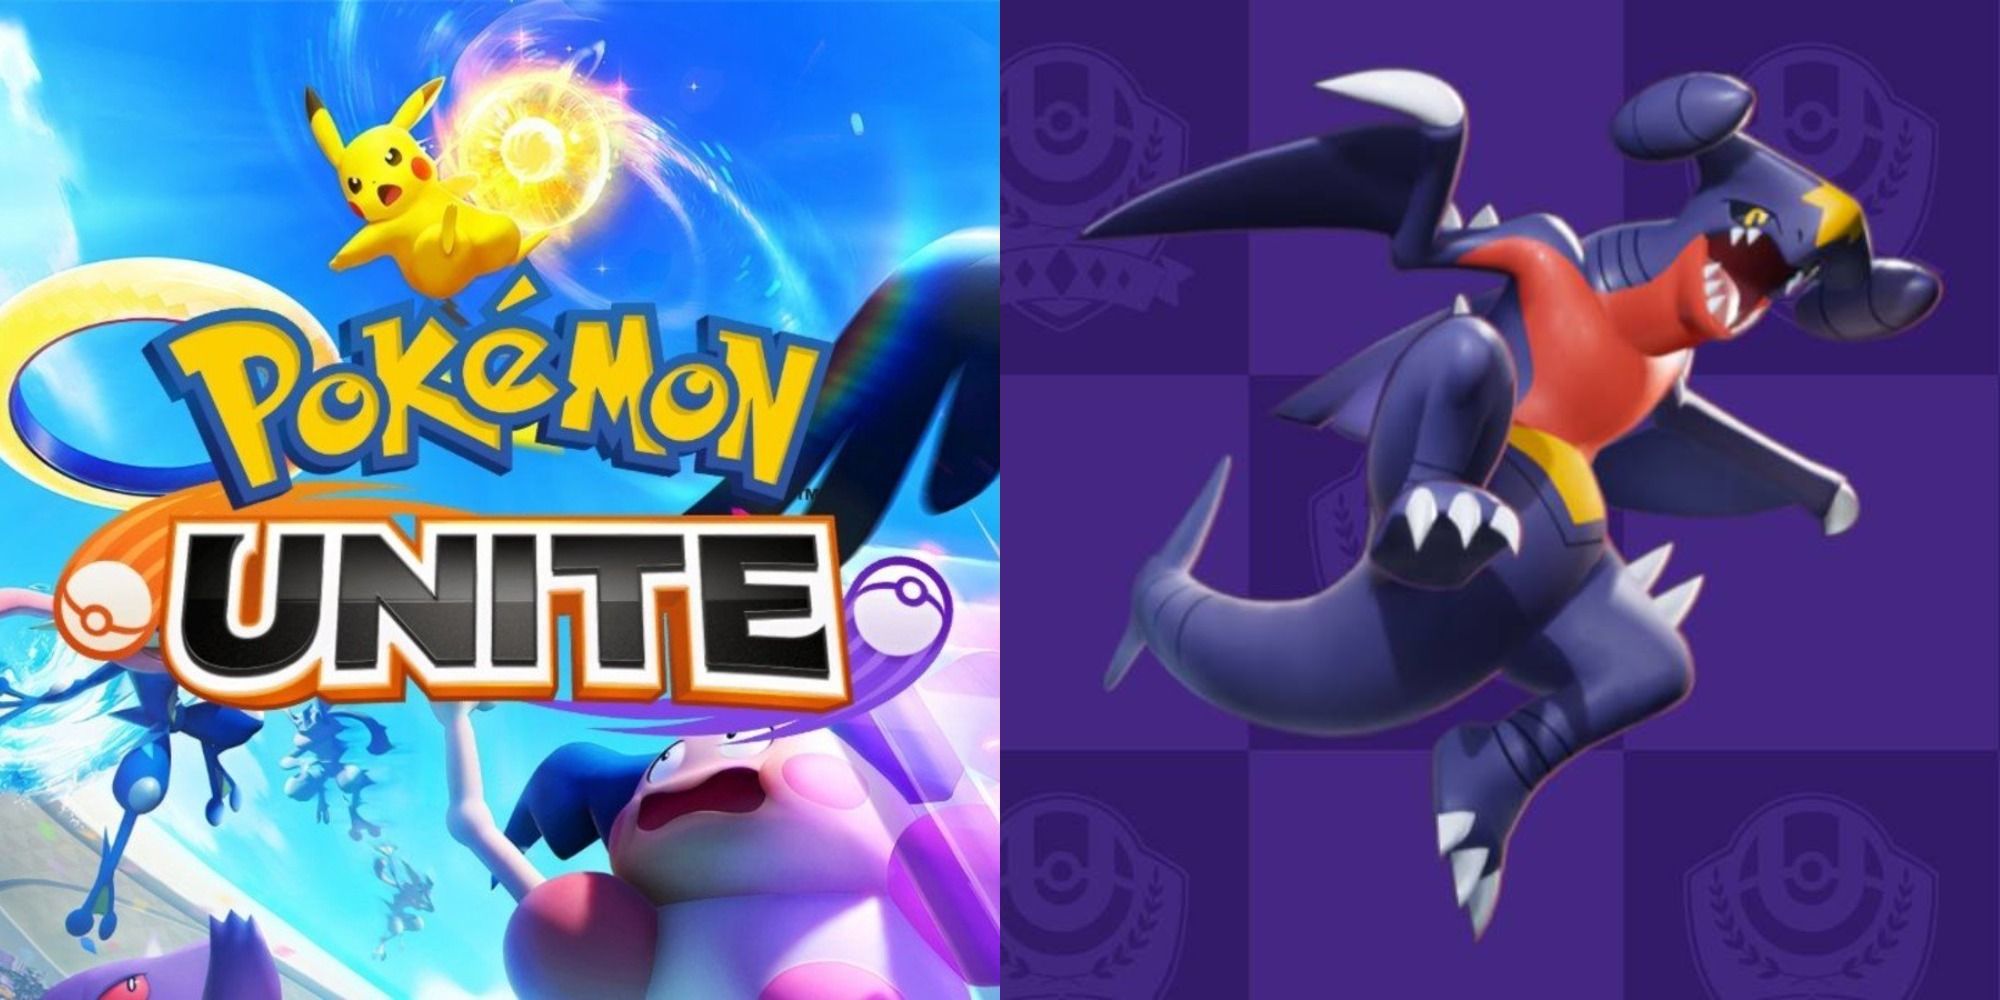 Split image showing the Pokémon Unite logo and Garchomp